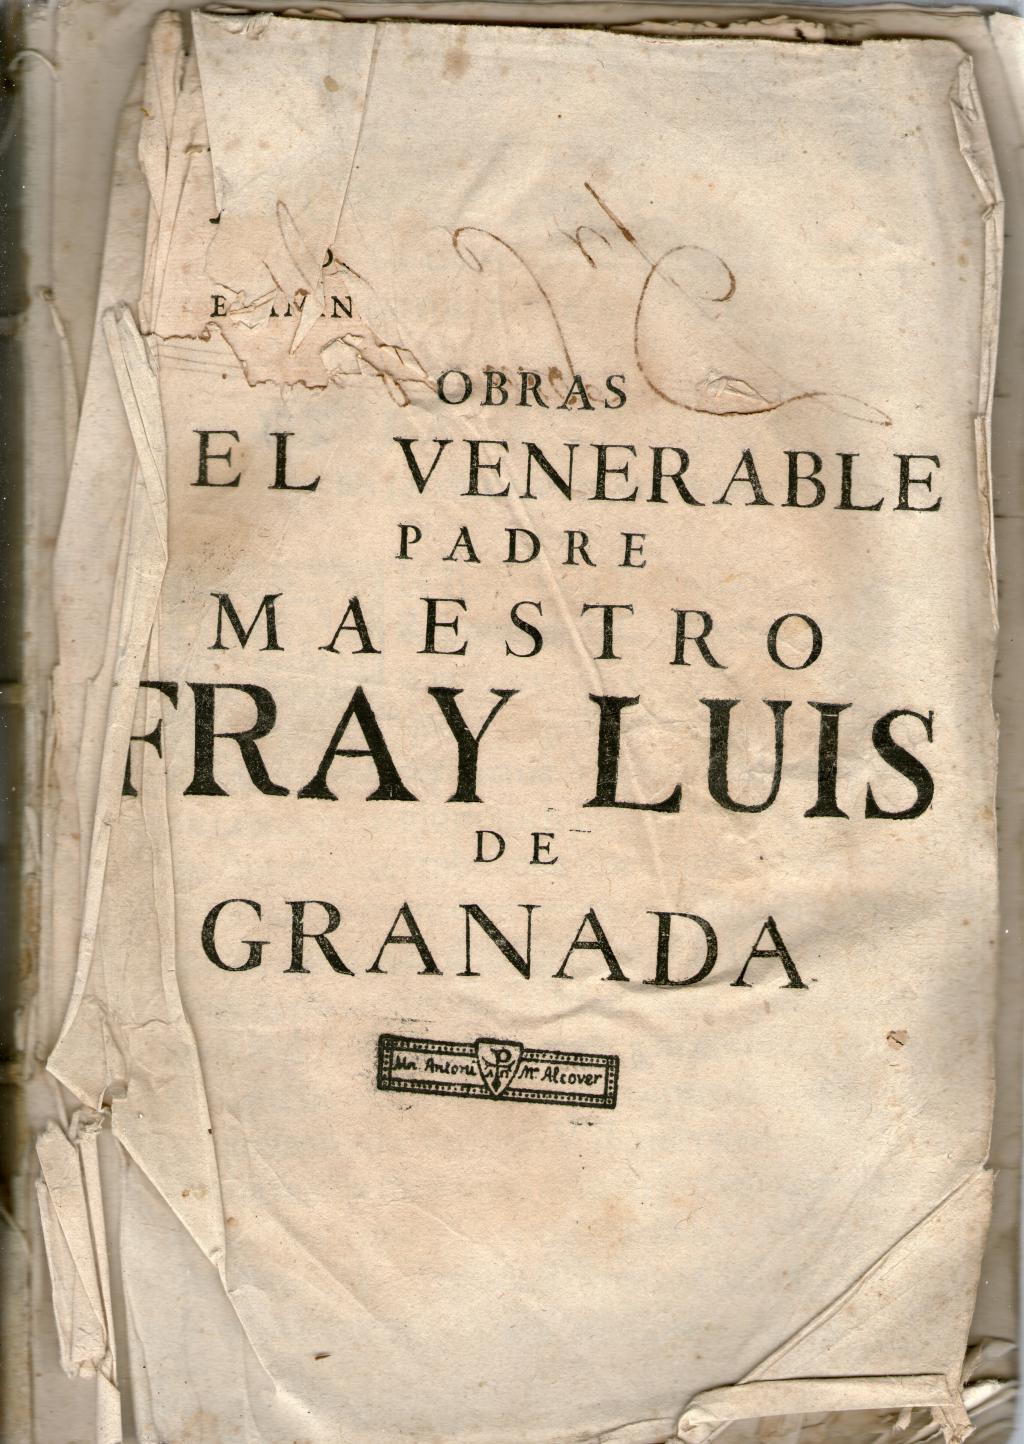 Coberta de Obras del Venerable padre maestre Fray Luís de Granada (Tom I)